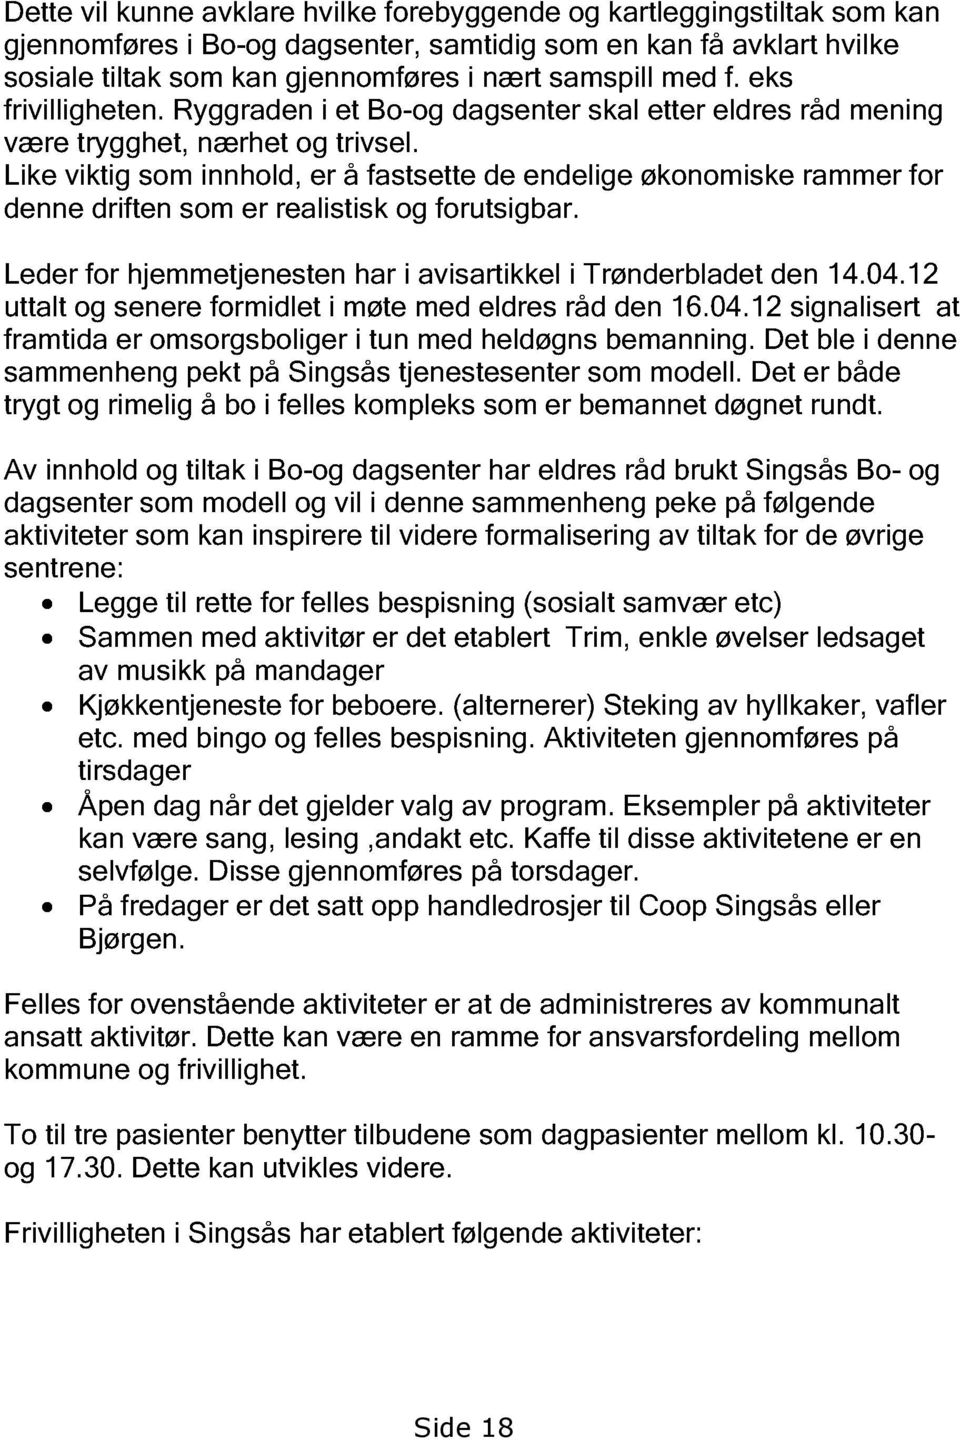 Like viktig som innhold, er å fastsette de endelige økonomiske rammer for denne driften som er realistisk og forutsigbar. Leder for hjemmetjenesten har i avisartikkel i Trønderbladet den 14.04.